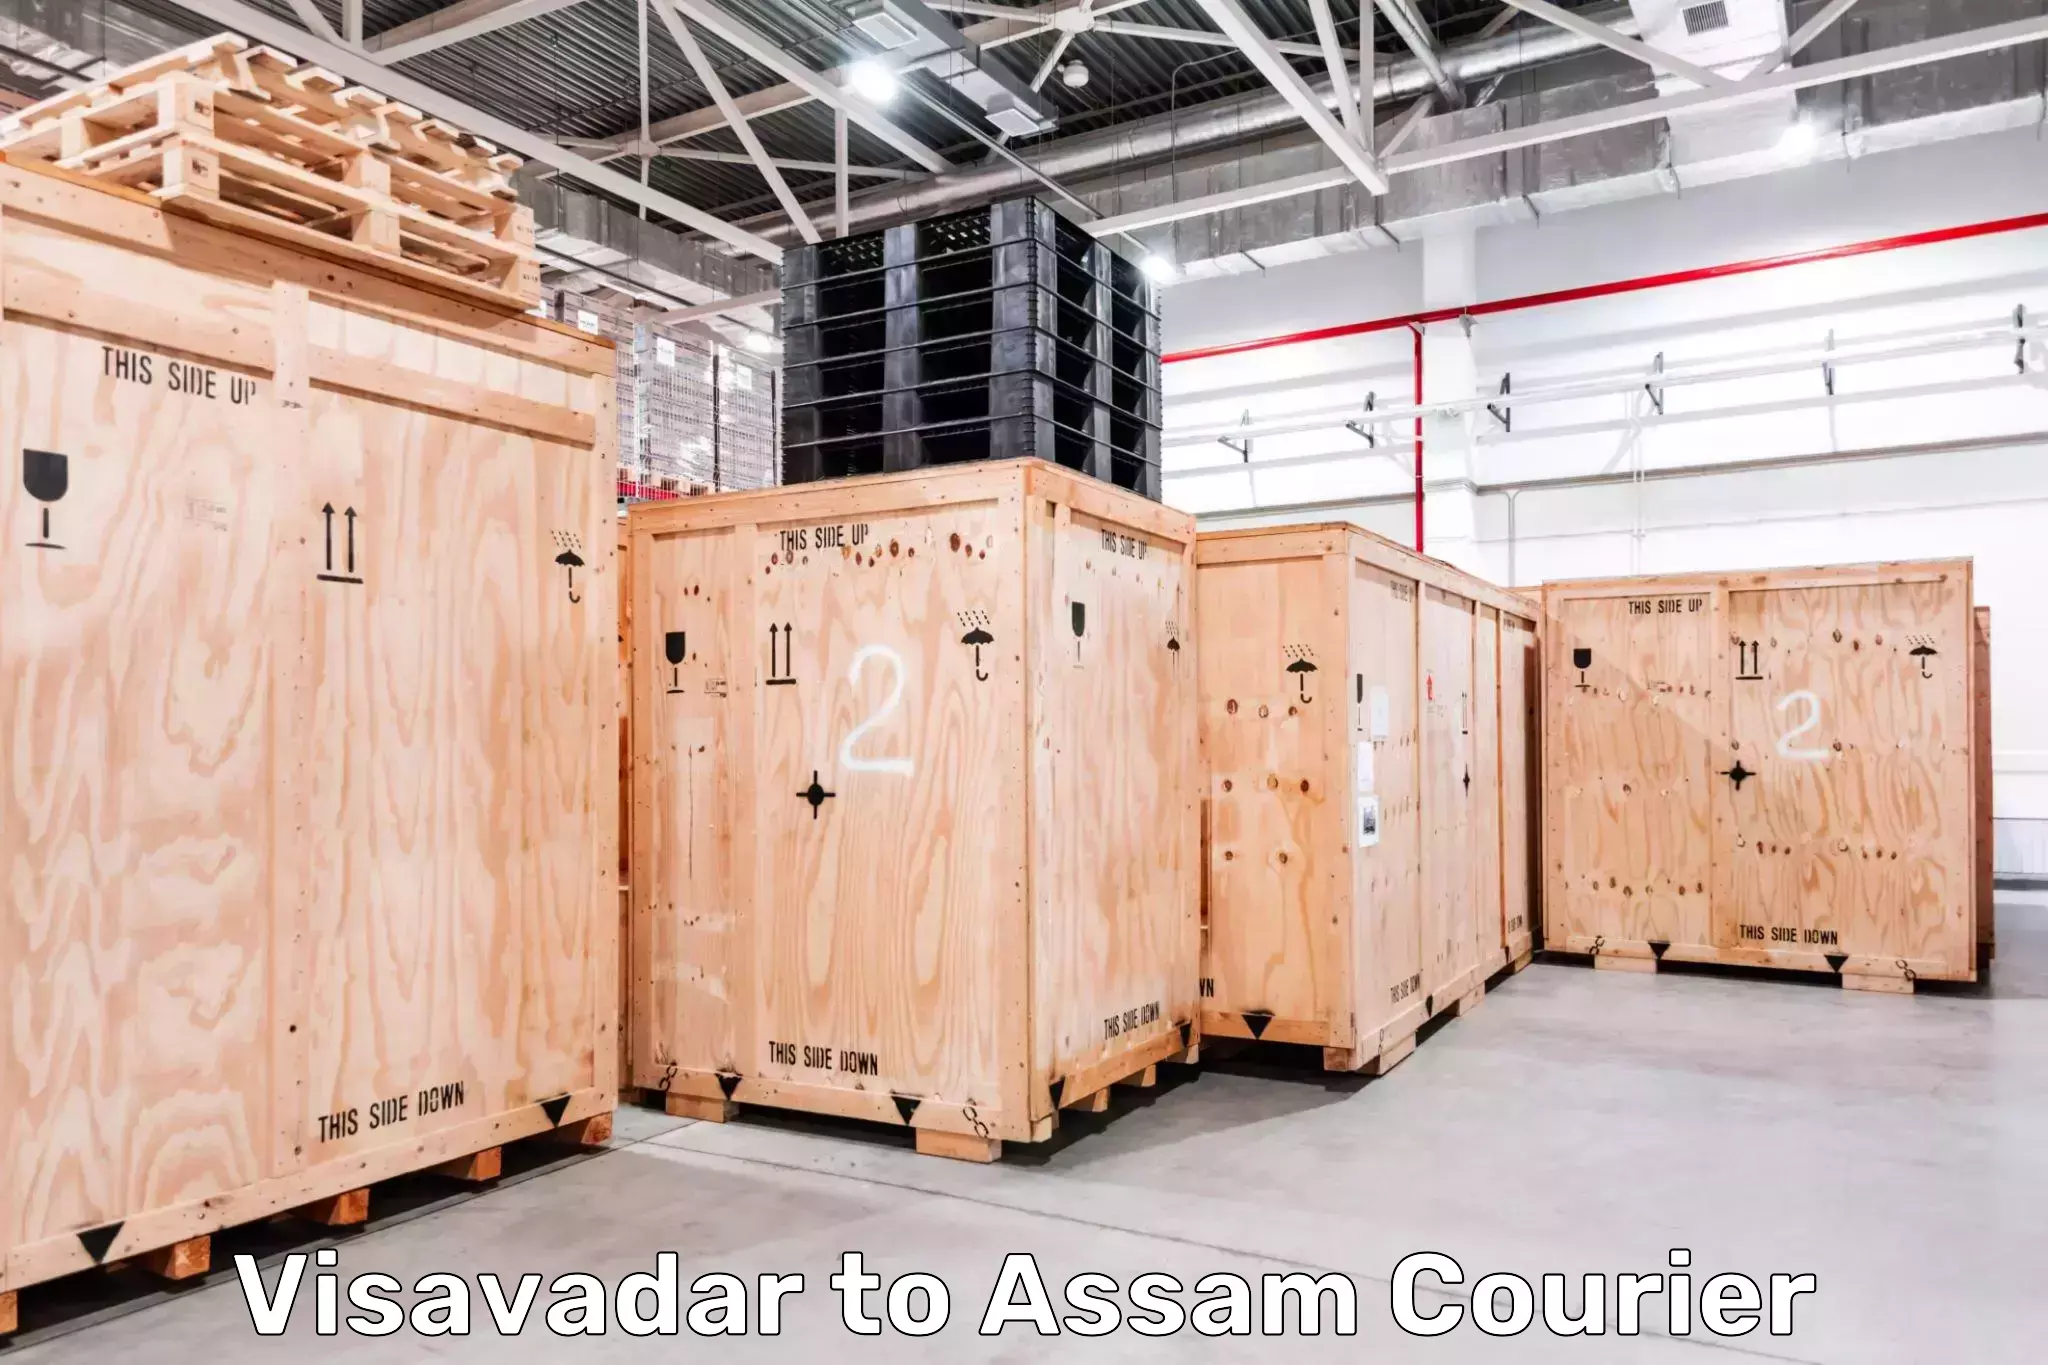 Next-day freight services Visavadar to Assam